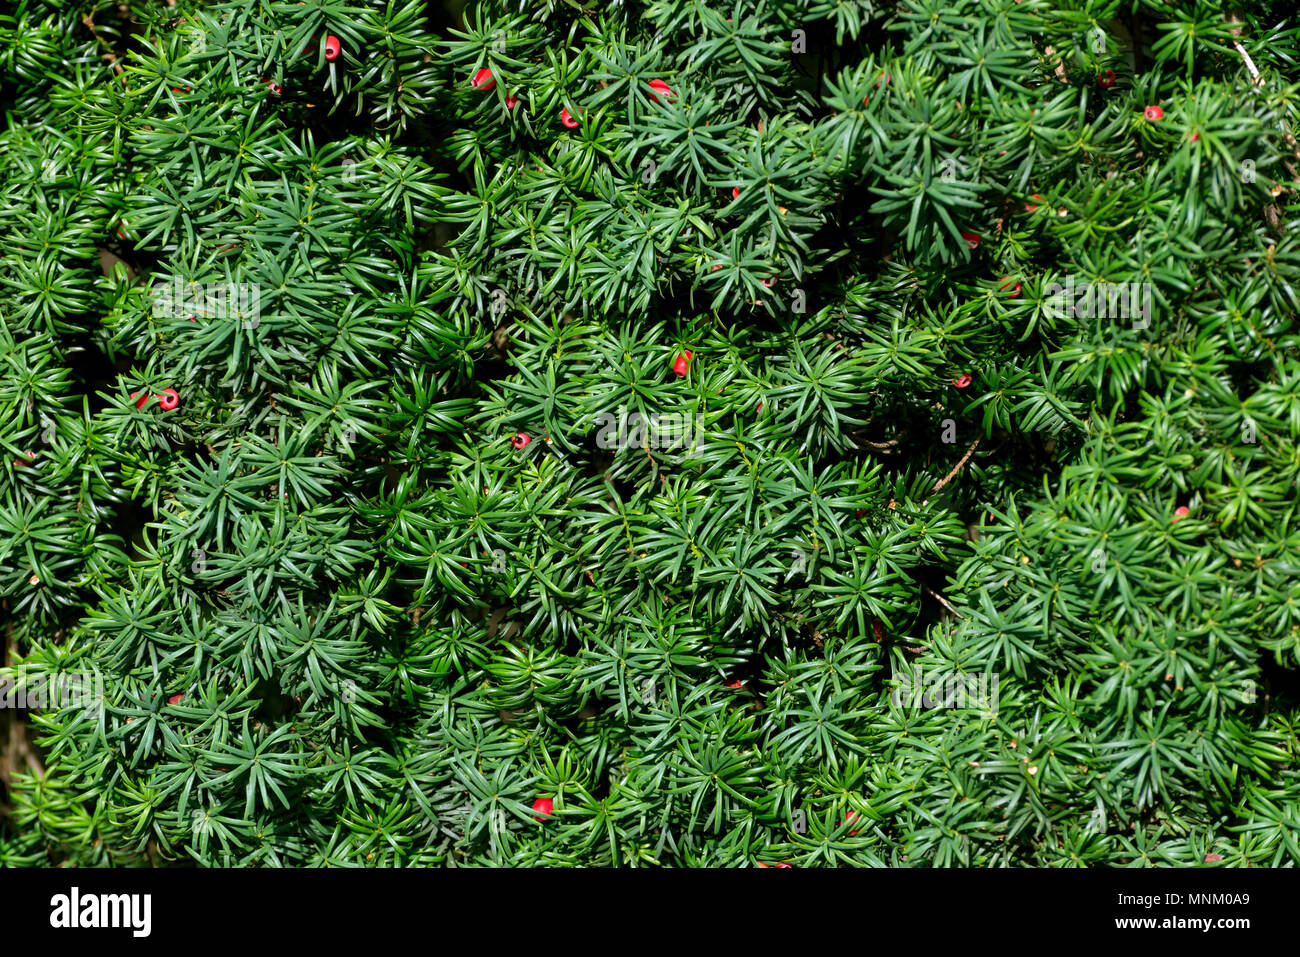 Englisch Eibe oder Europäische Eibe grüne Zweige mit roten Beeren. Hintergrund mit grünen Nadeln einer Beere Eibe Stockfoto